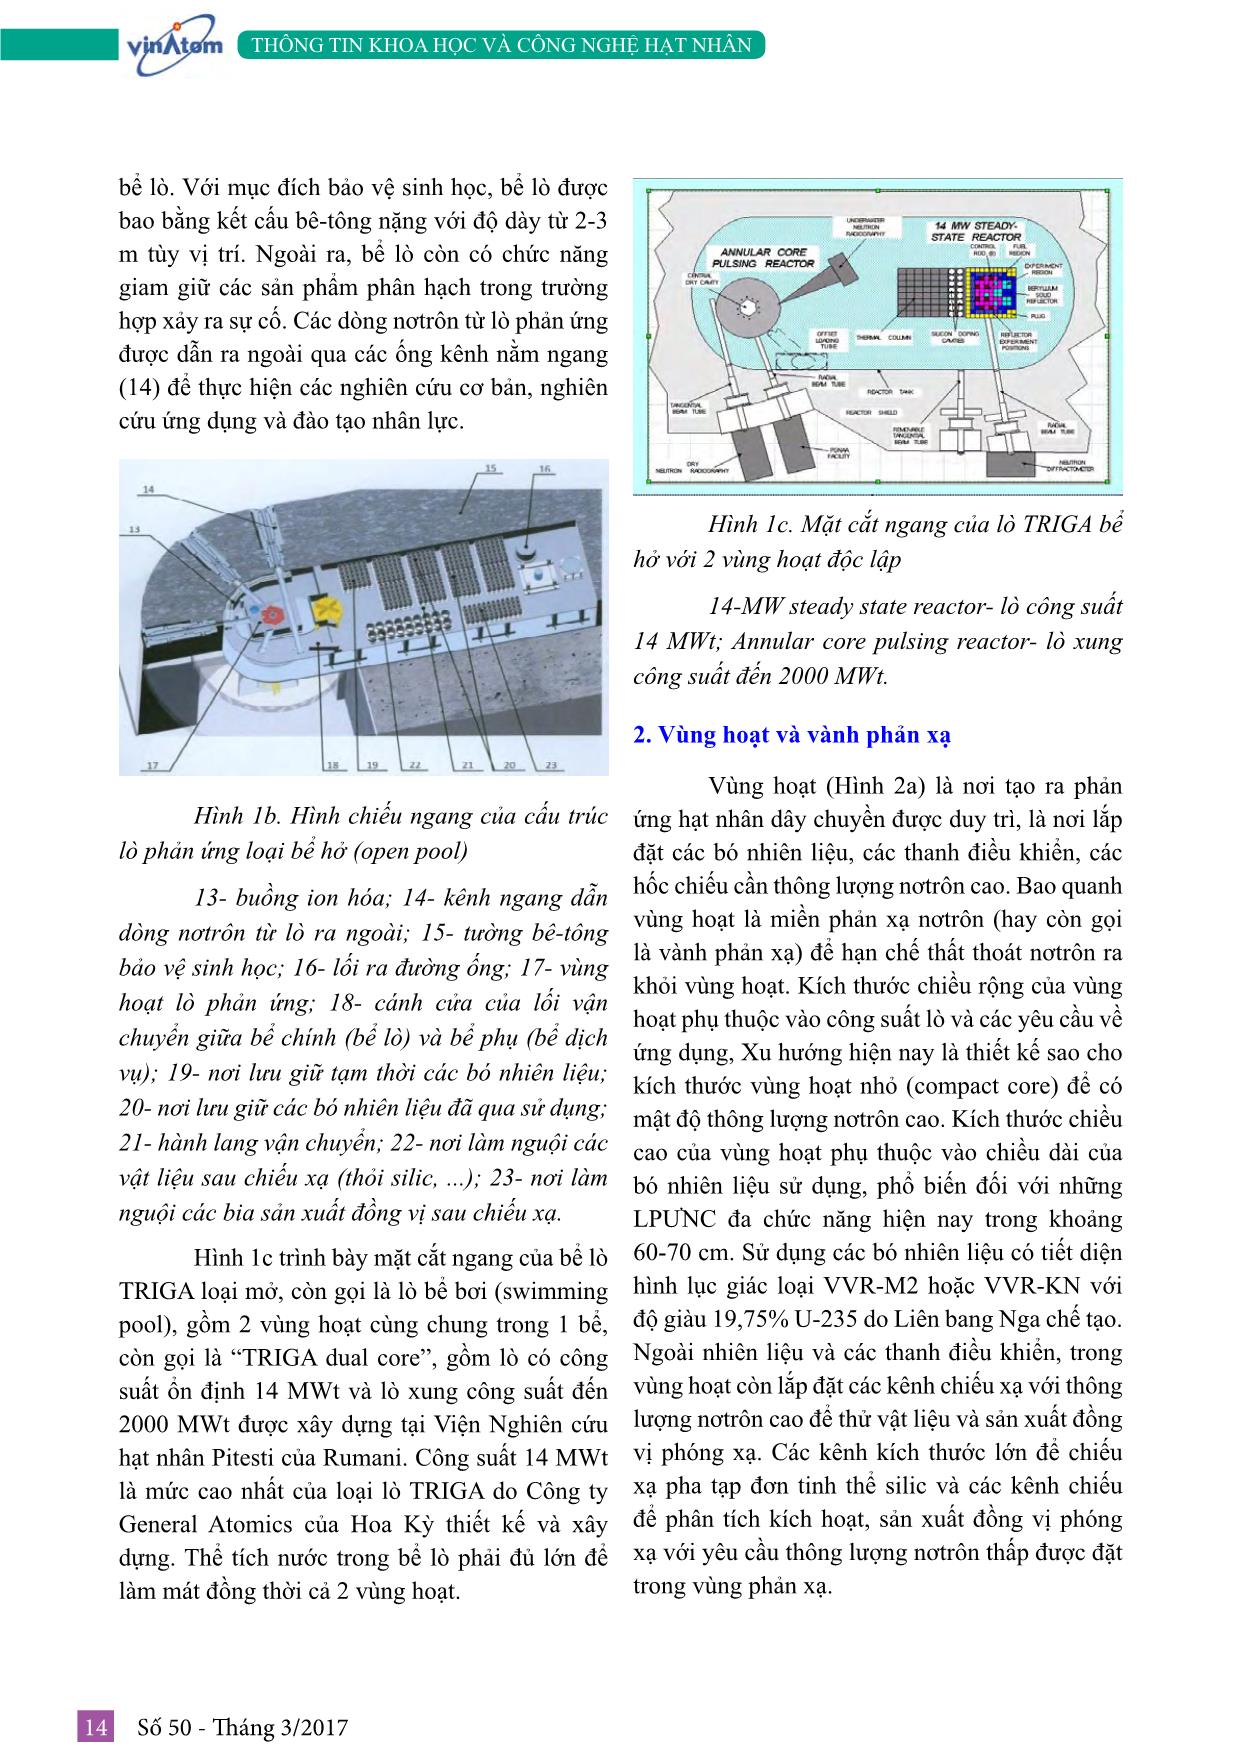 Tìm hiểu về công nghệ lò phản ứng nghiên cứu trang 4